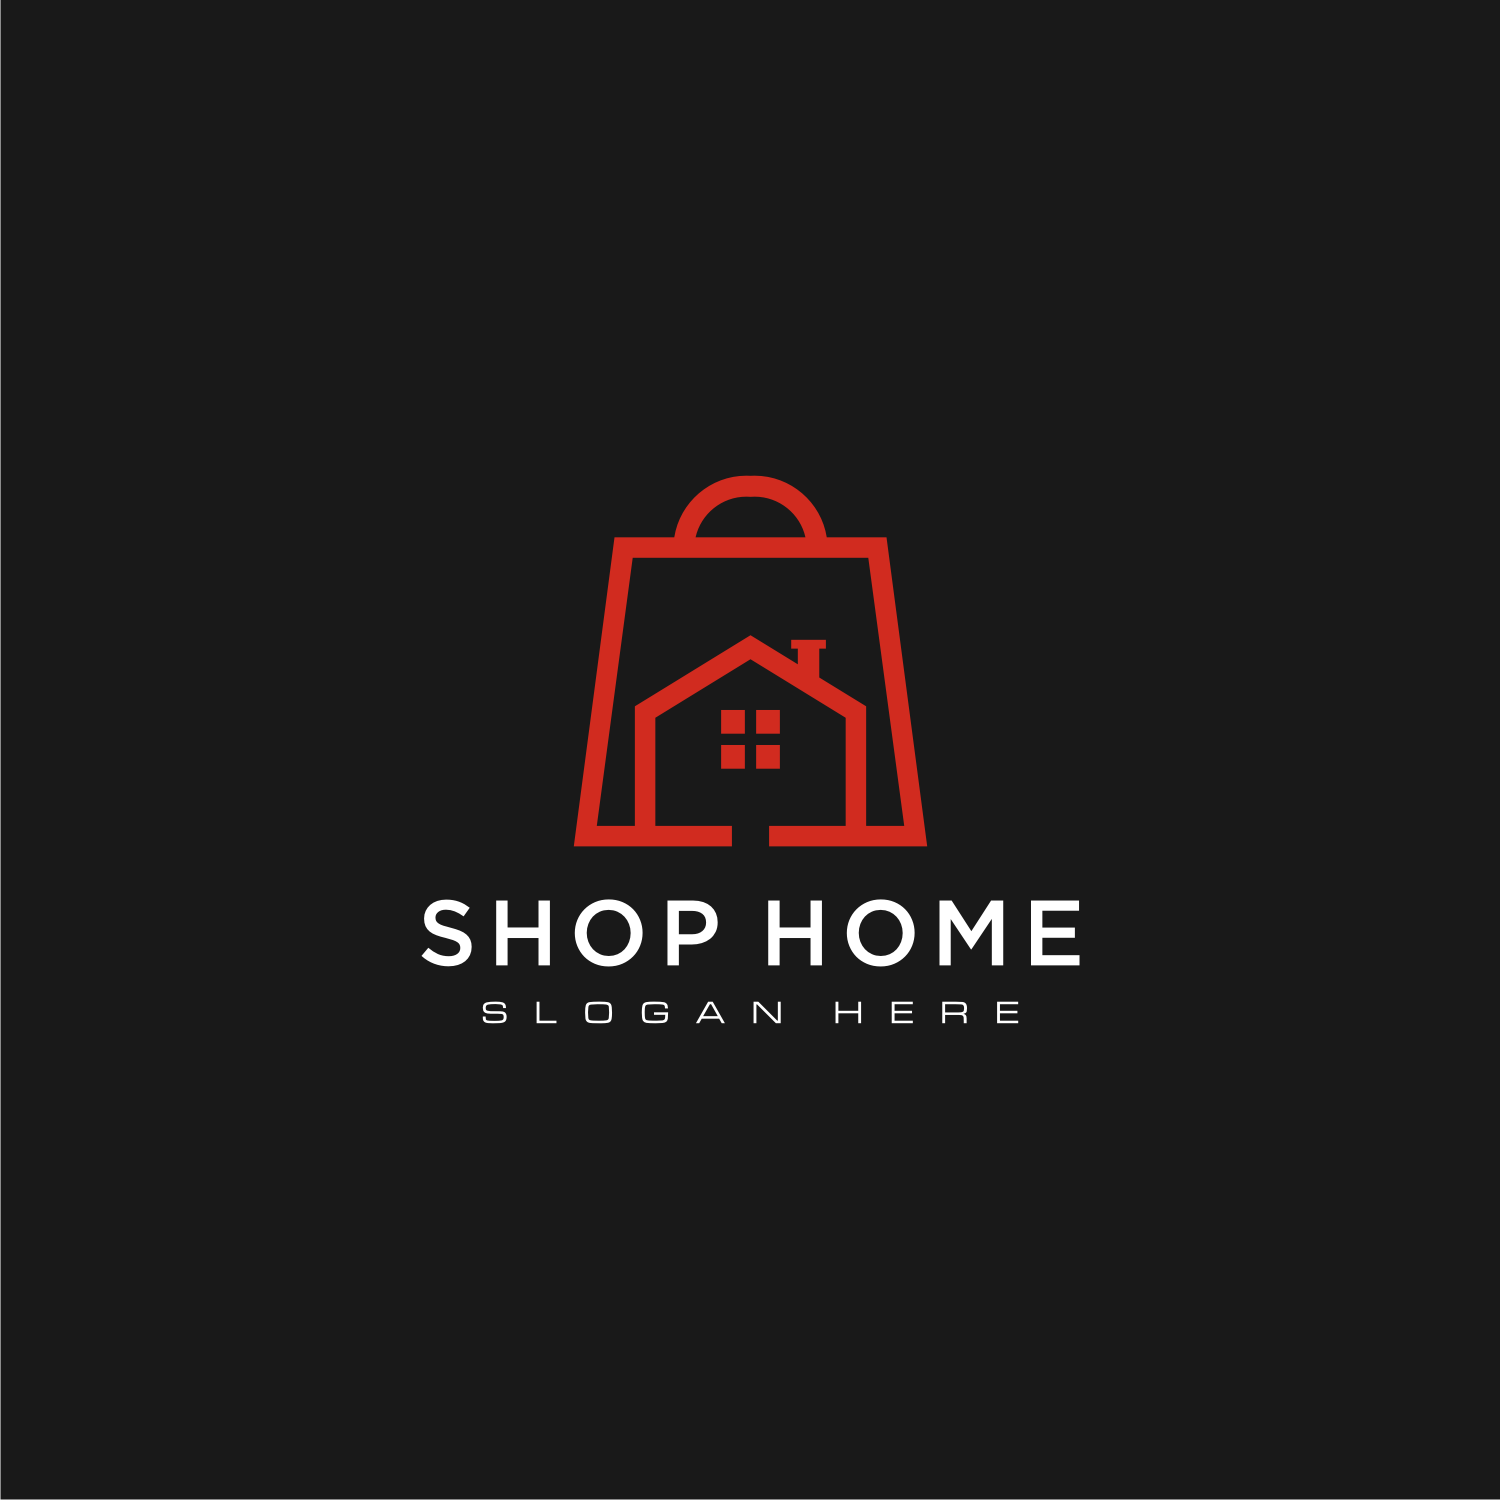 Home Shop Logo Vector Design Black Style.